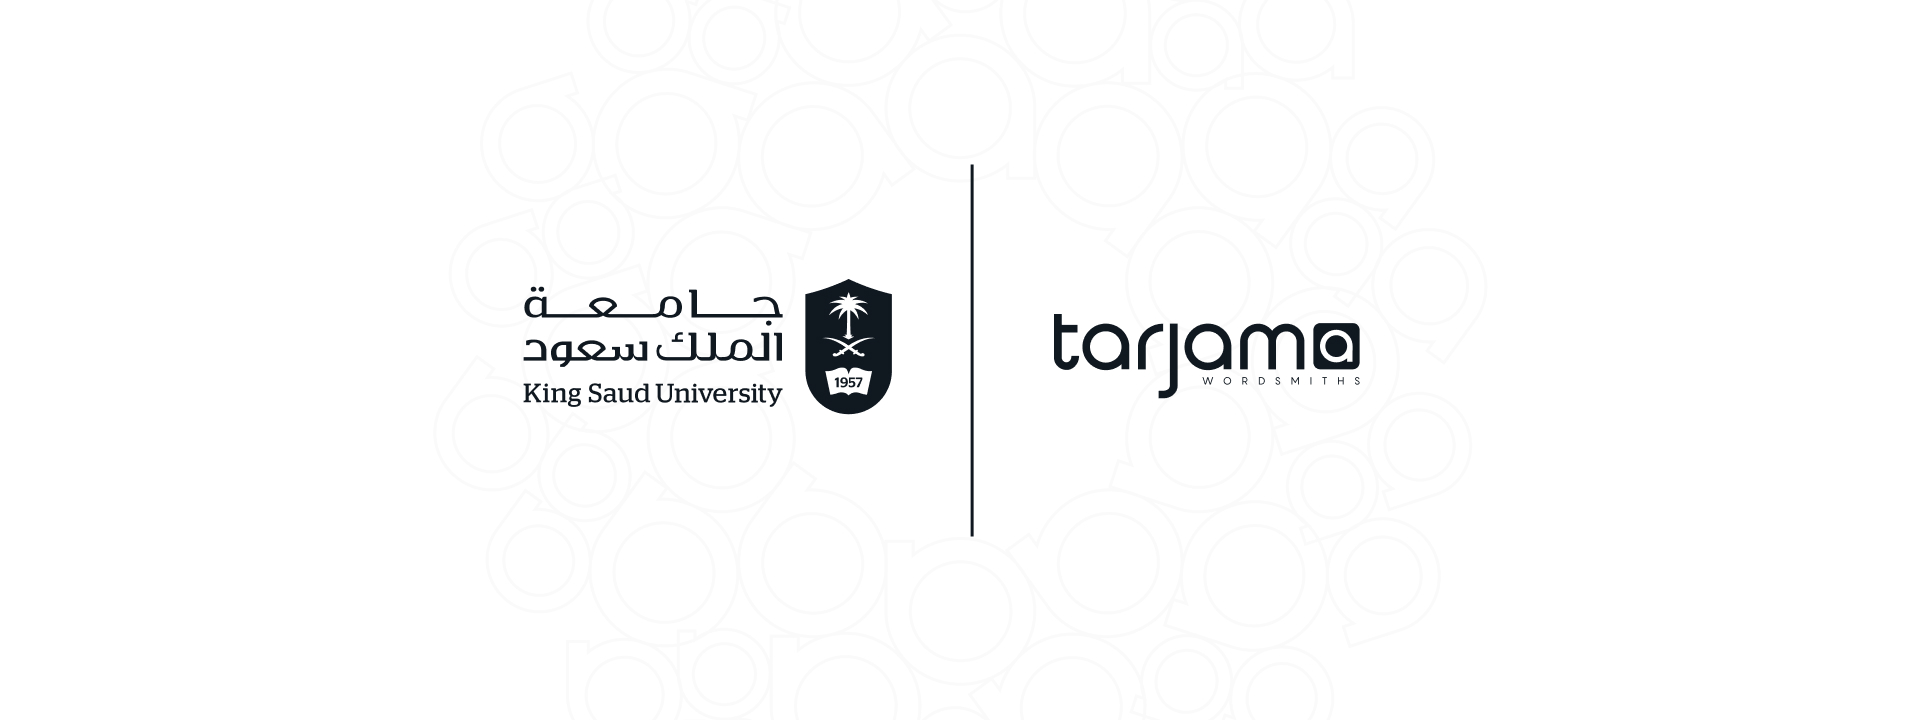 شركة “ترجمة” وجامعة الملك سعود يوحدان جهودهما لتنمية مهارات المترجمين في سوق العمل السعودي￼